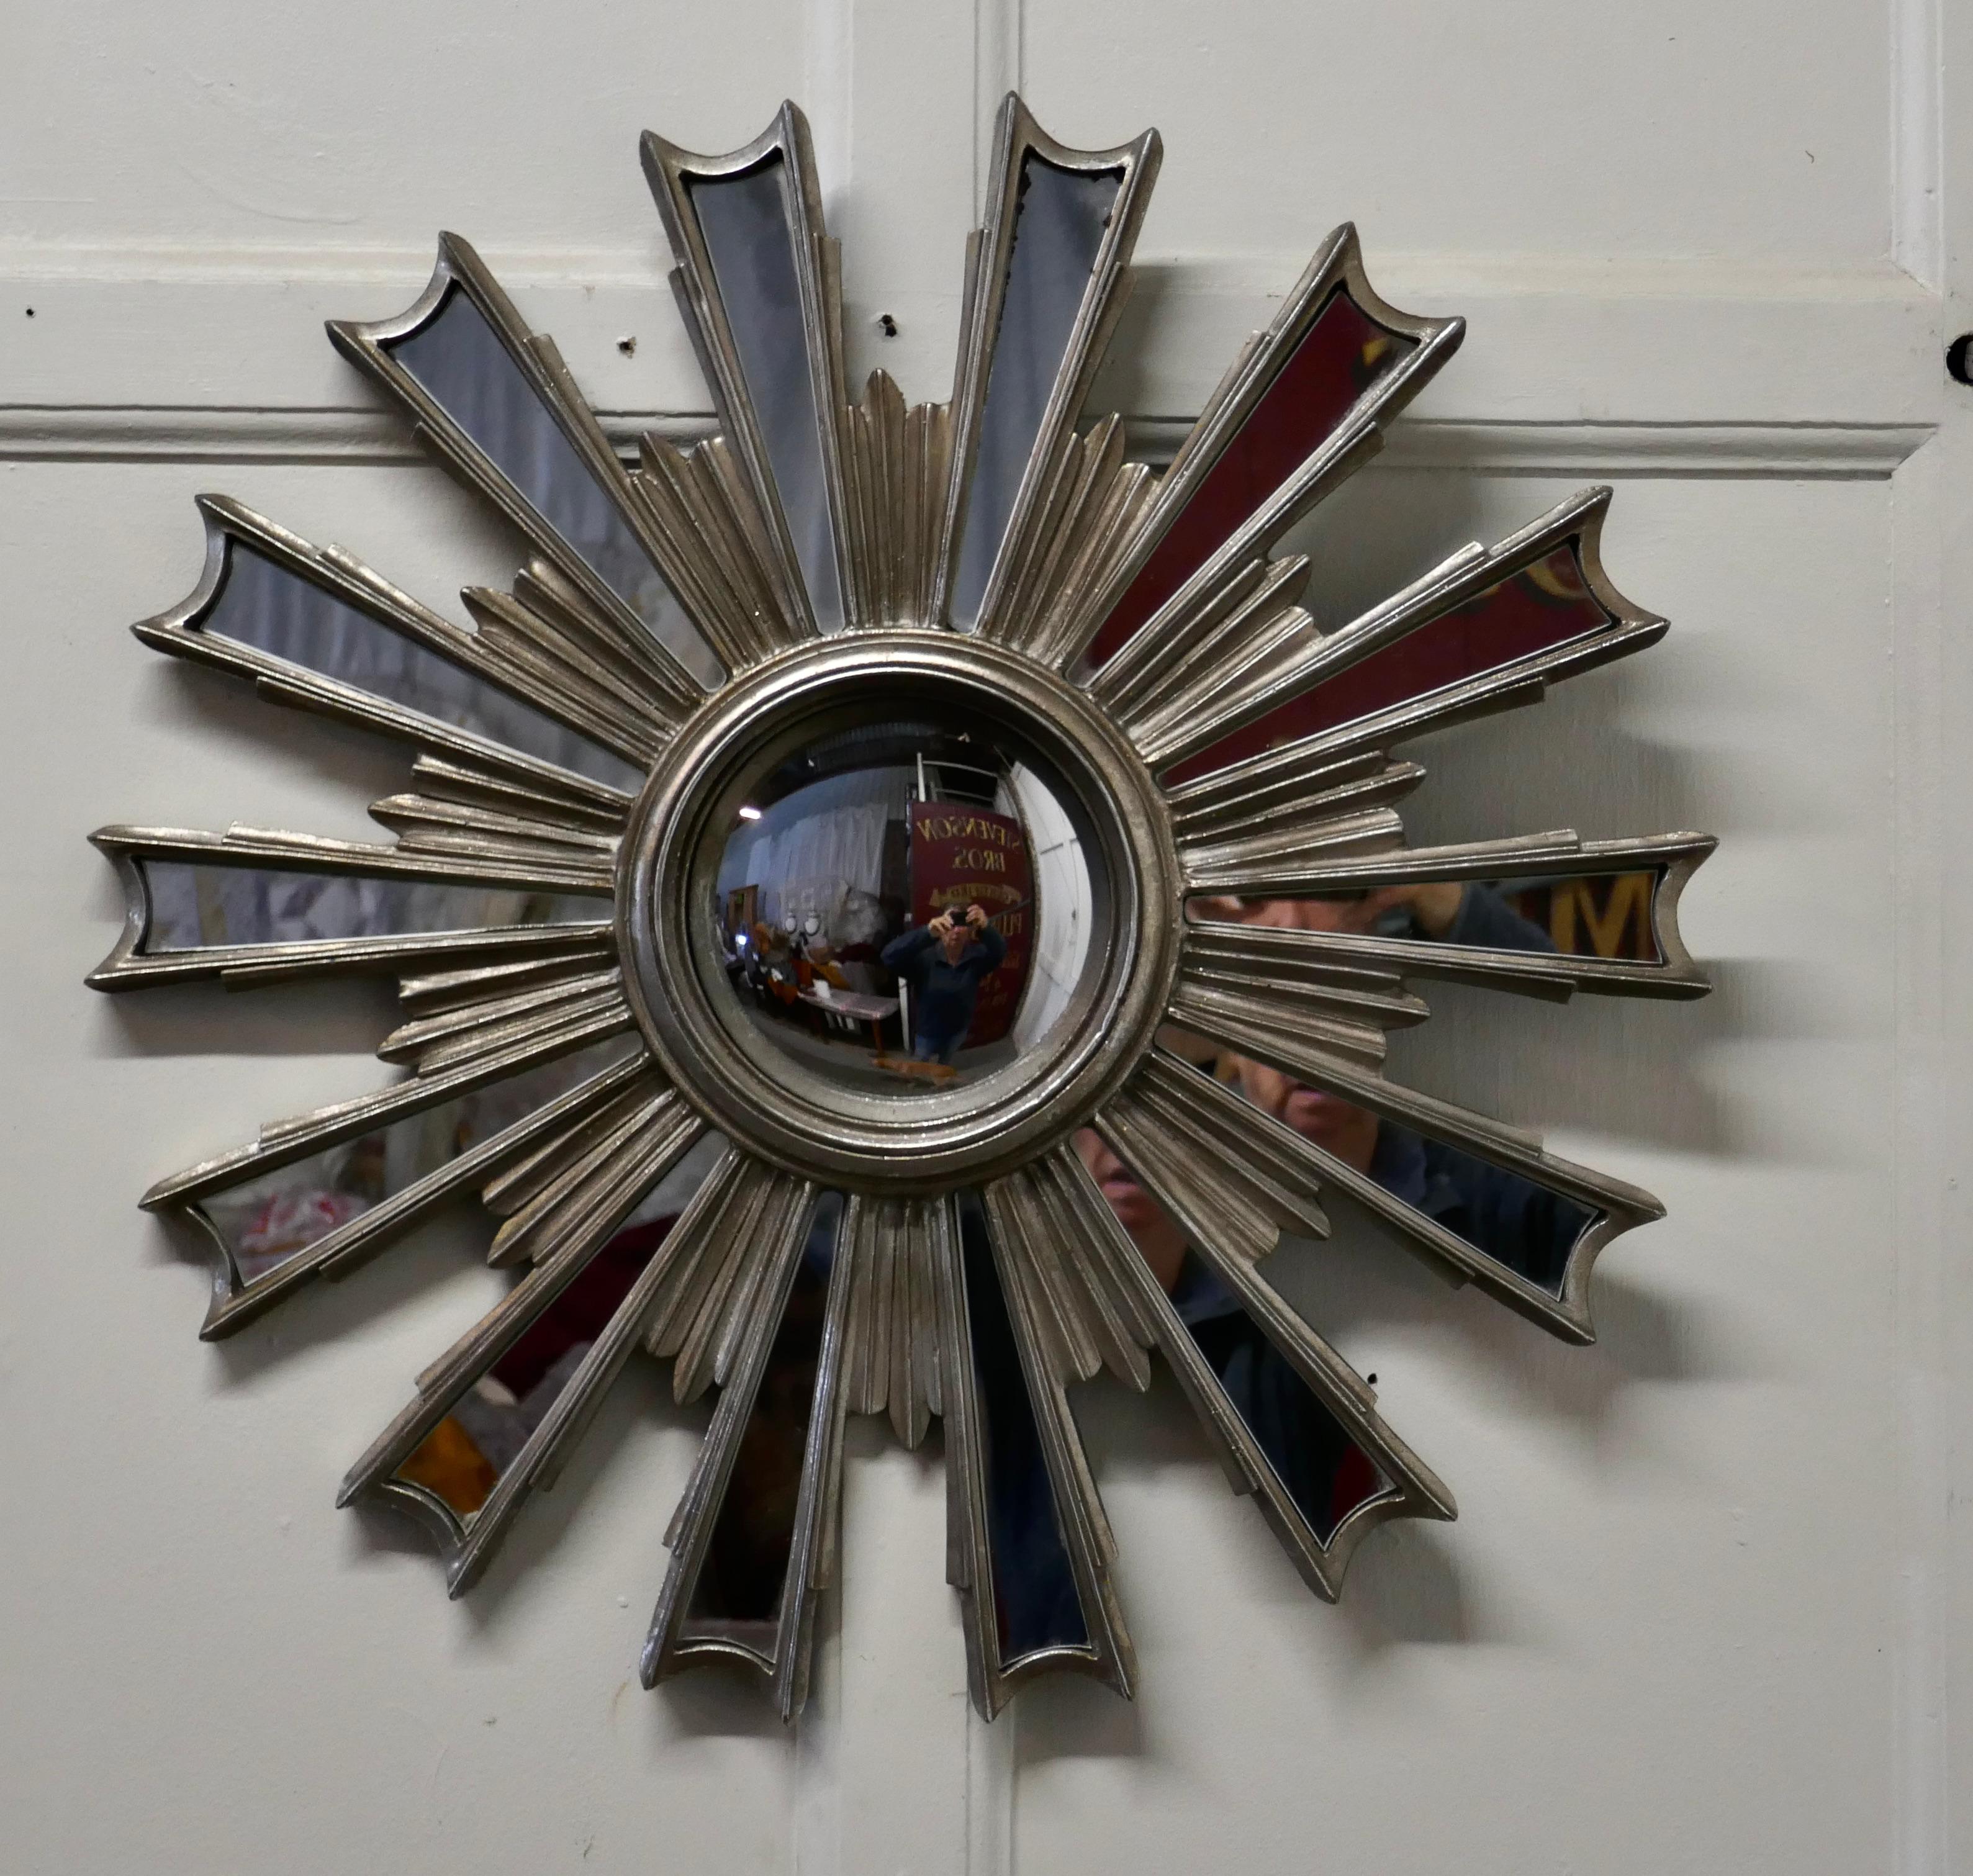 Französisch Retro Sunburst Industrial Look Polierte Spiegel

Ein großartiges, stilvolles Stück, der Sternenhimmel strahlt vom zentralen Spiegel aus, die Strahlen sind einzeln gespiegelt

Ein Klassiker aus dem 20. Jahrhundert, ein attraktives